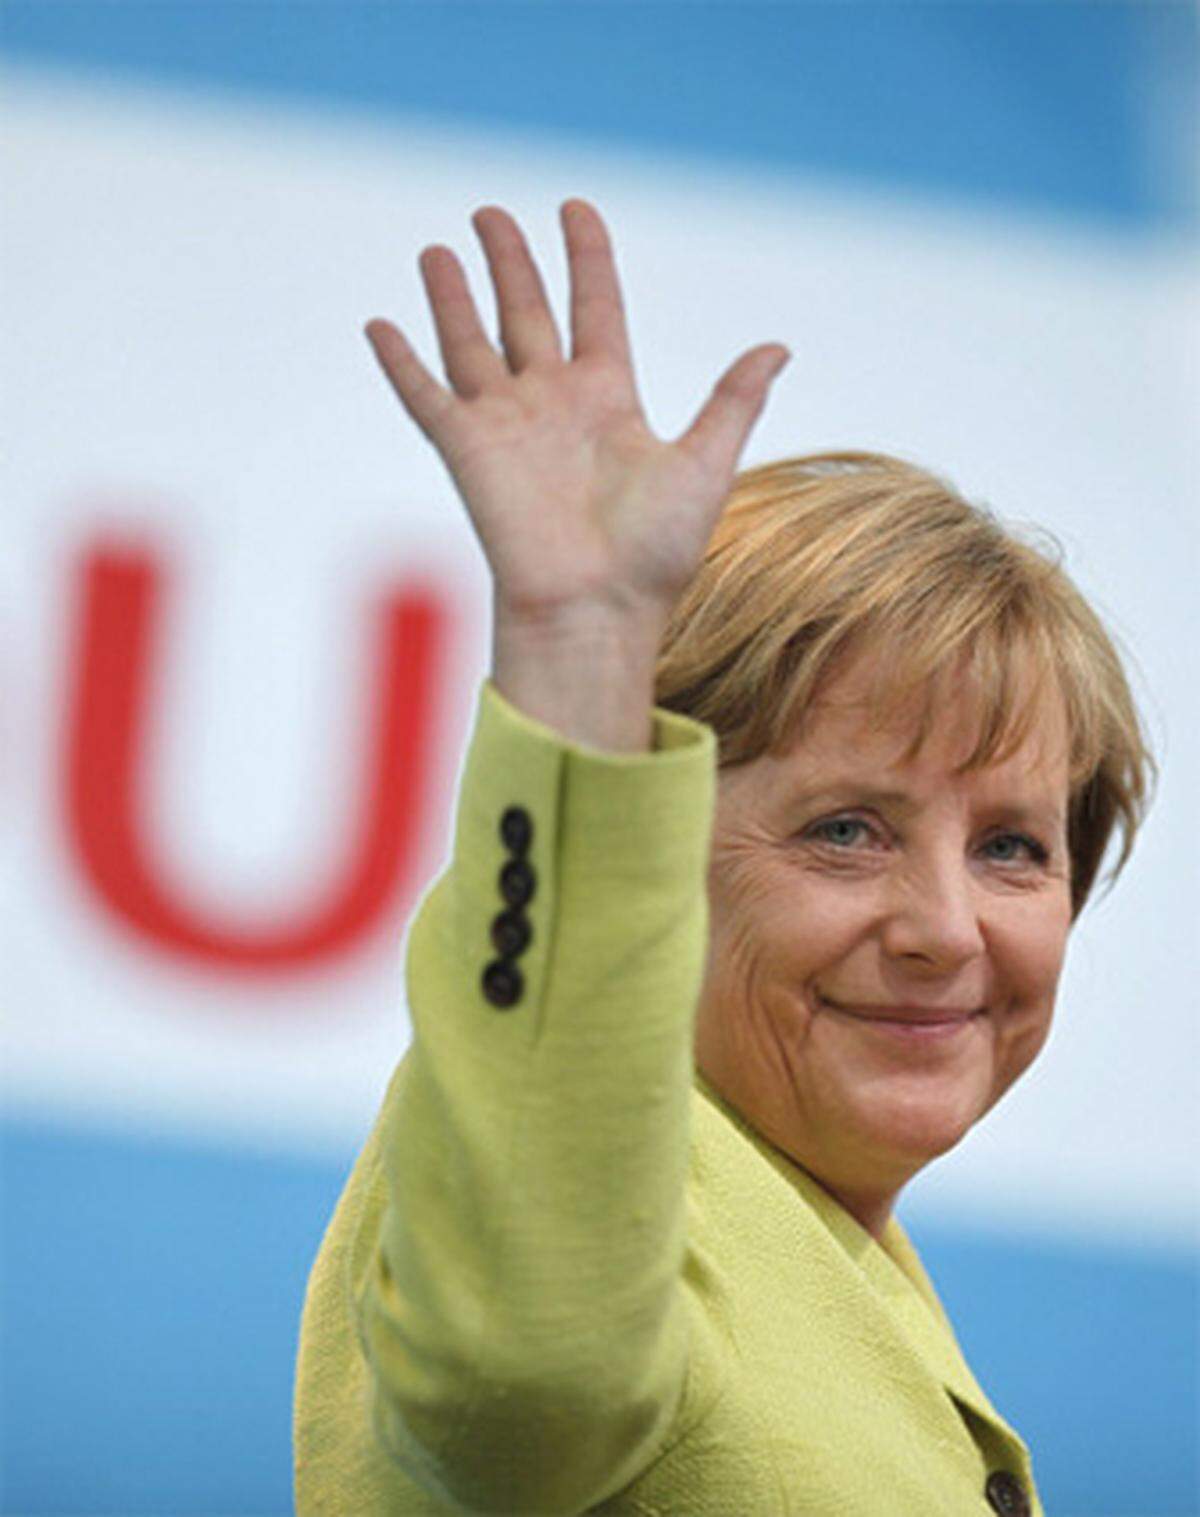 Die deutsche Kanzlerin Angela Merkel bezeichnete Ashton ebenfalls als "gute EU-Politikerin", die unter anderem den Vertrag von Lissabon im britischen Oberhaus durchgesetzt hatte. "Ich gehöre zu den Menschen, die wissen, dass Persönlichkeiten in Aufgaben hineinwachsen können."